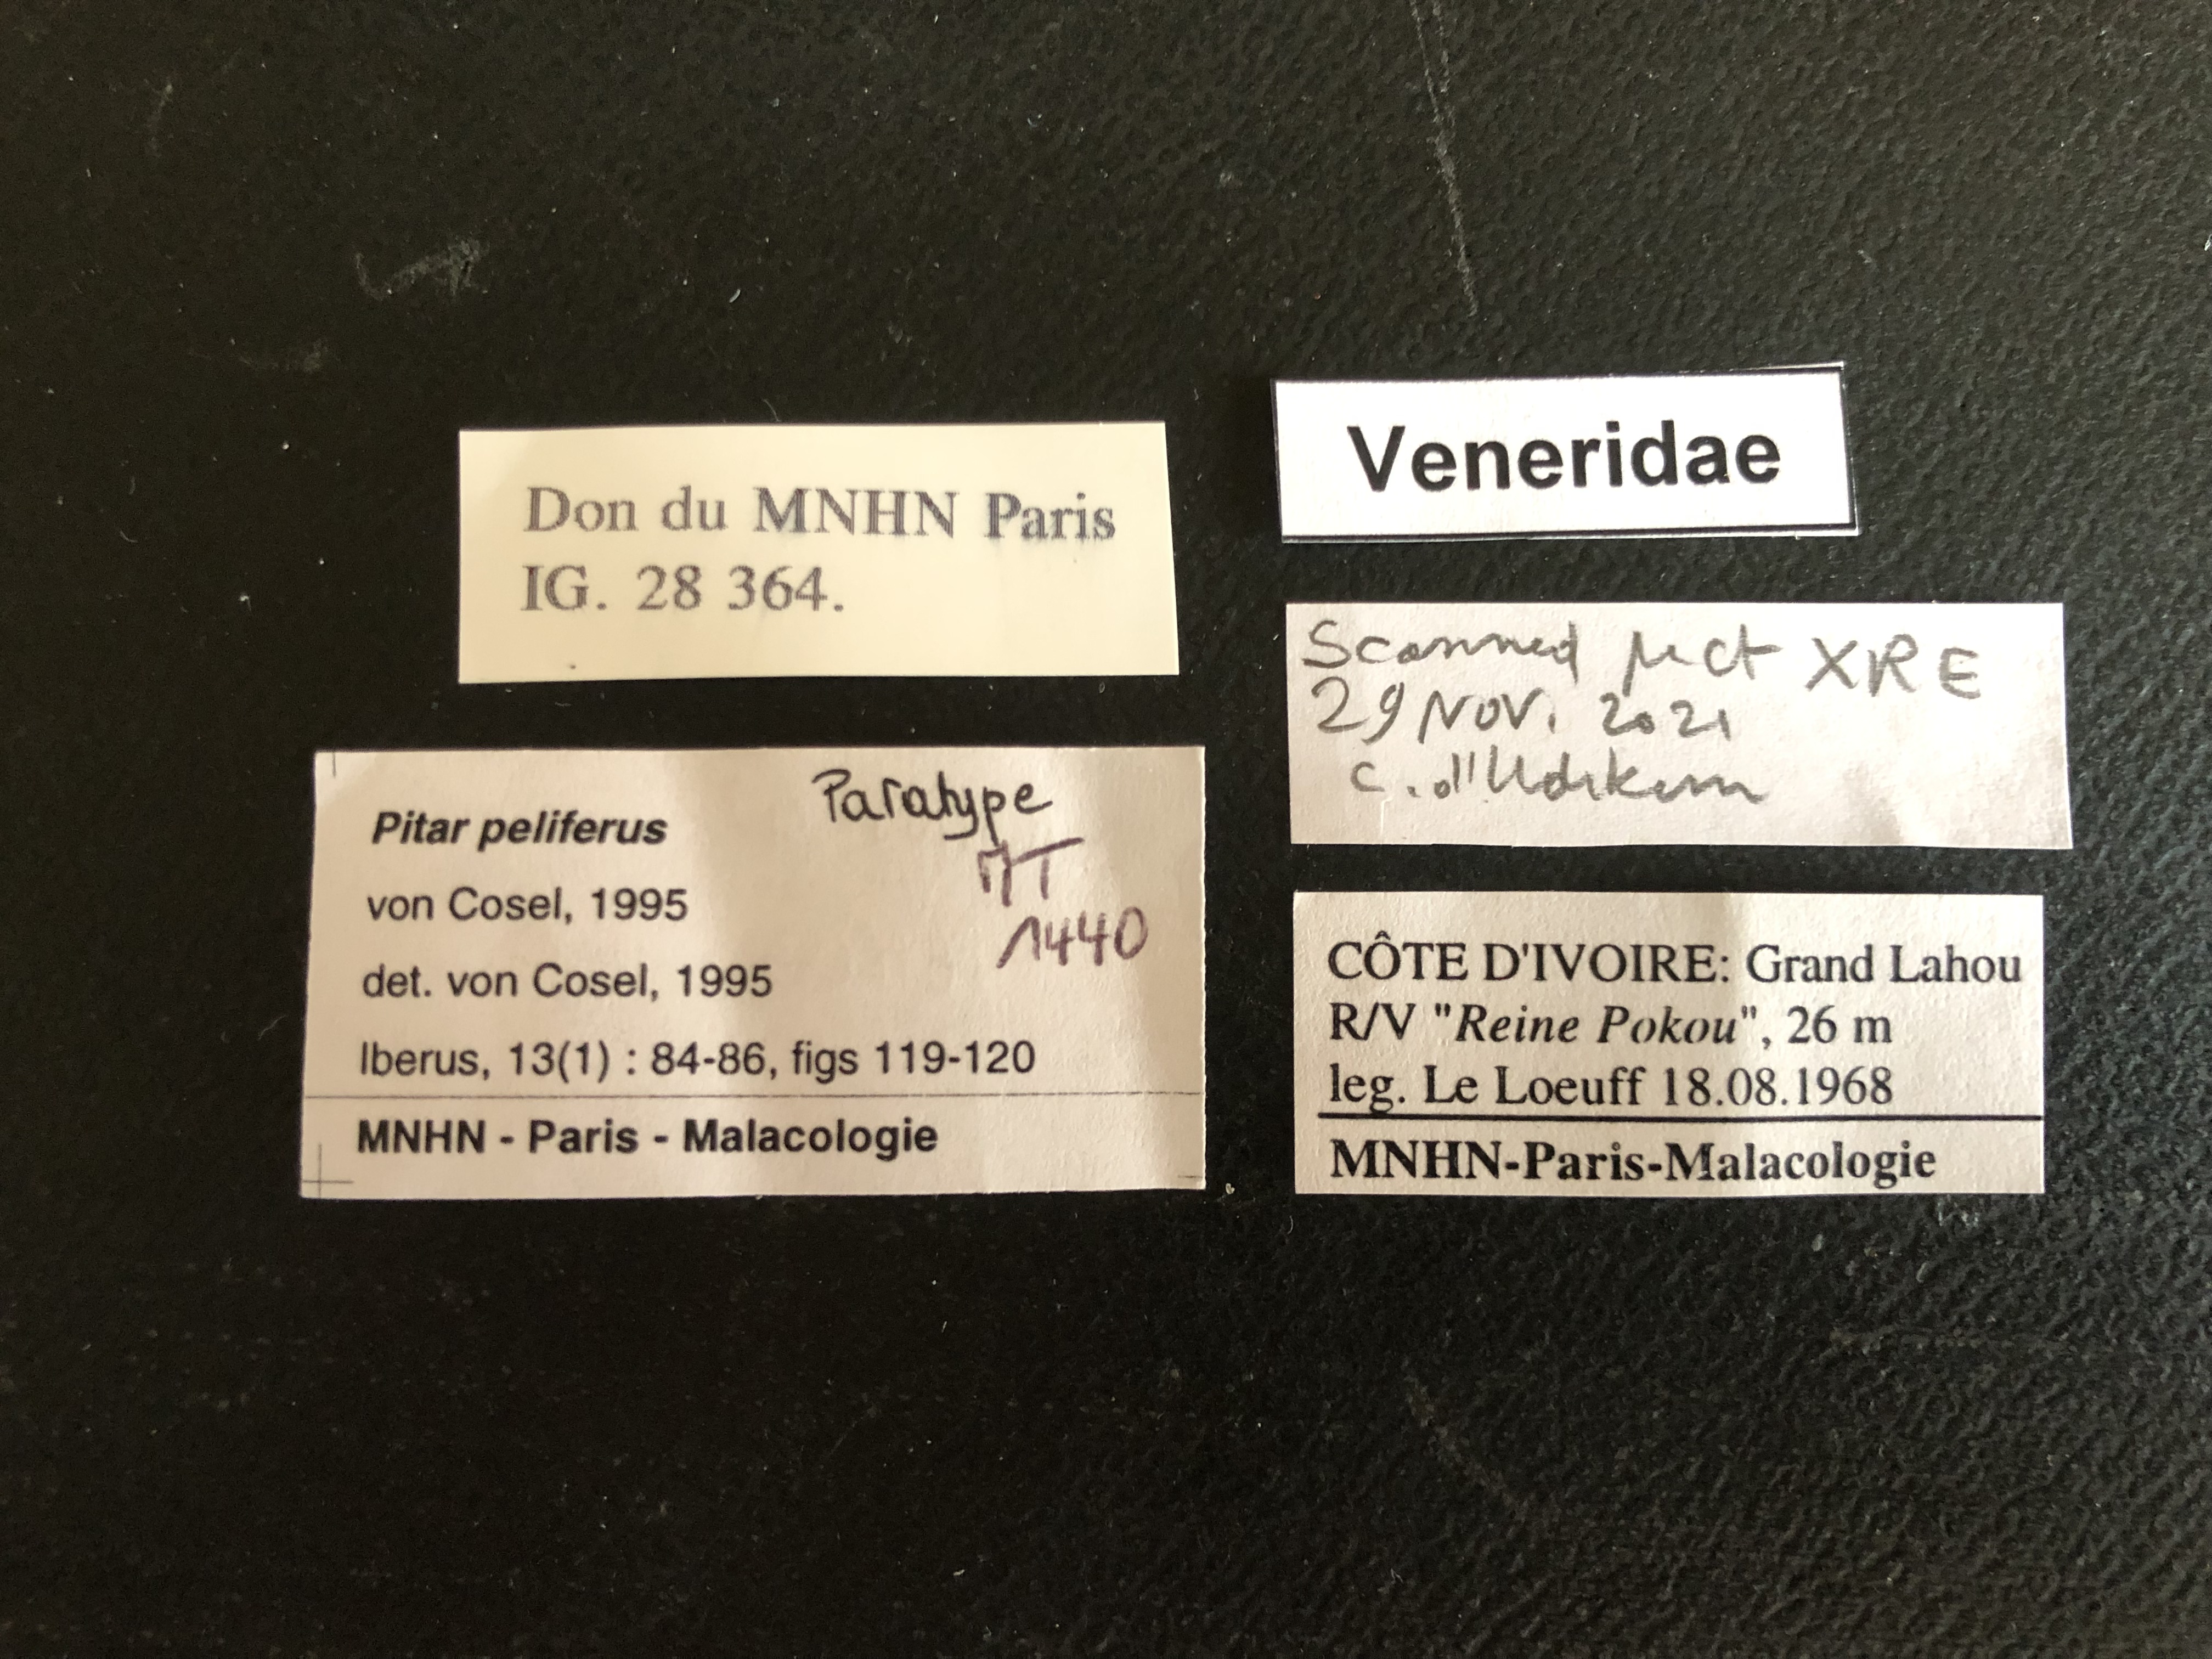 MT 1440 Pitar peliferus Labels